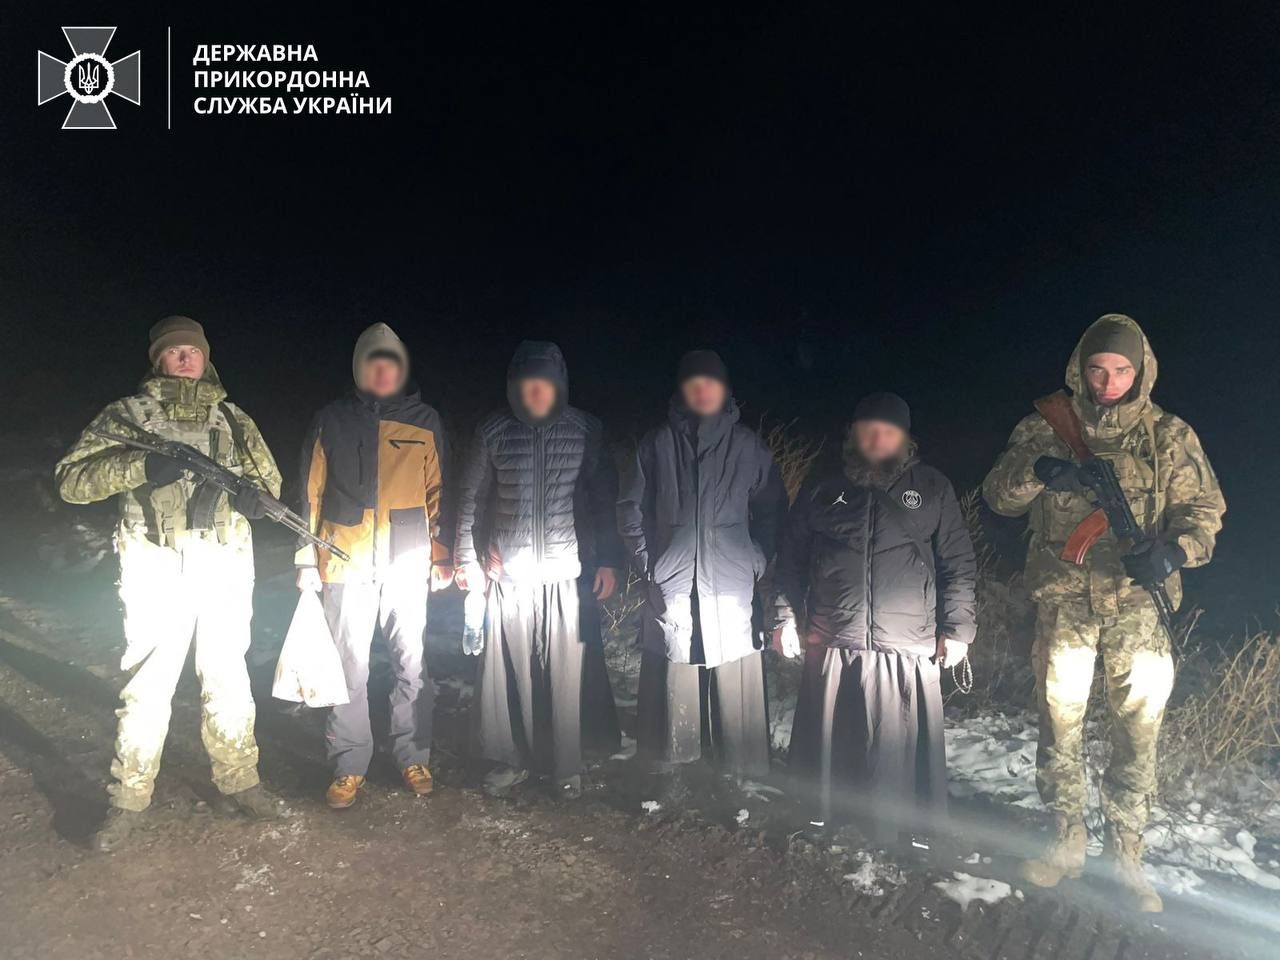 Казначей Киево-Печерской лавры пытался незаконно пересечь границу с переодетыми попами